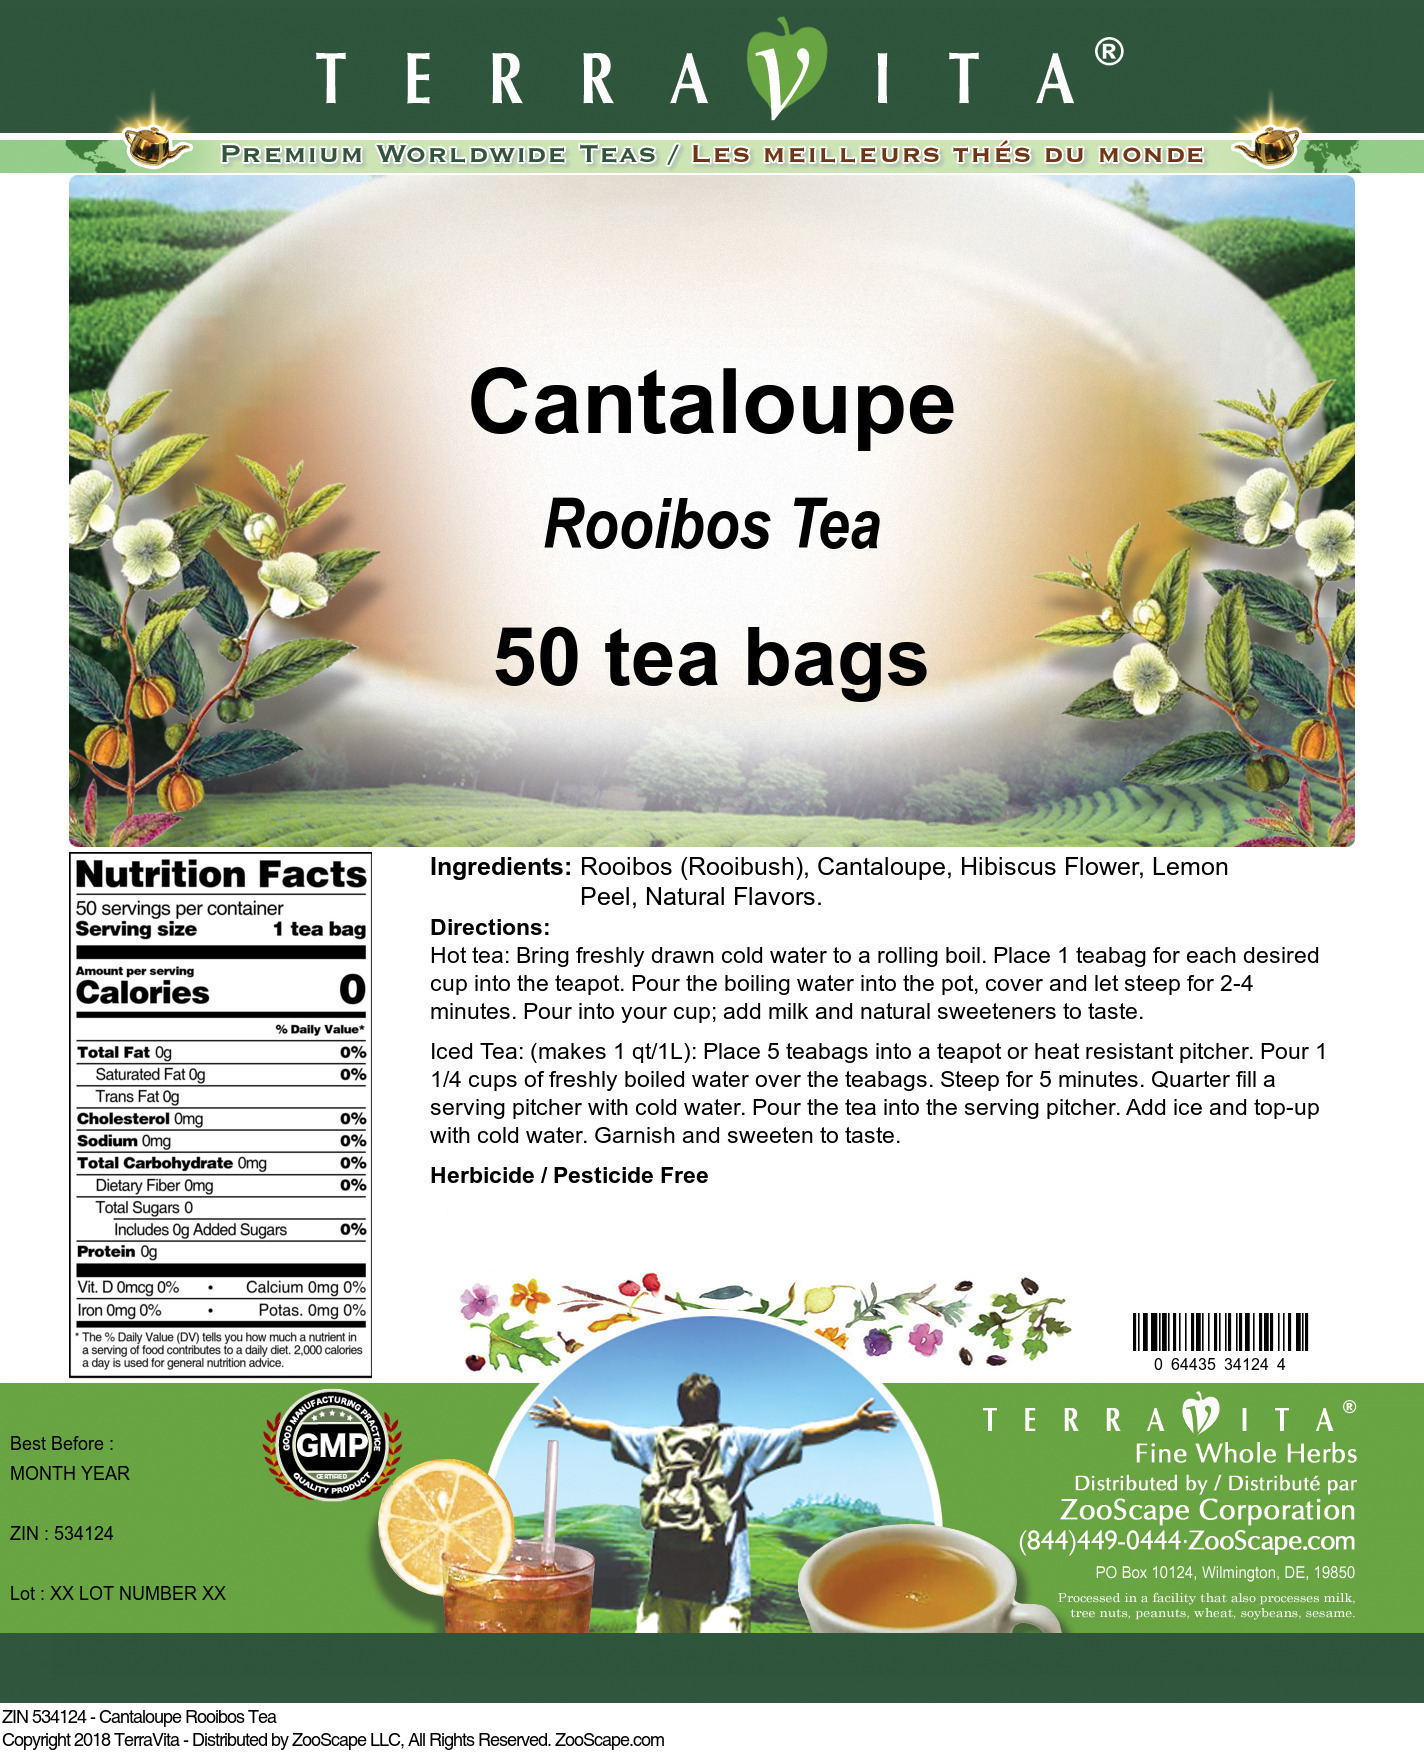 Cantaloupe Rooibos Tea - Label